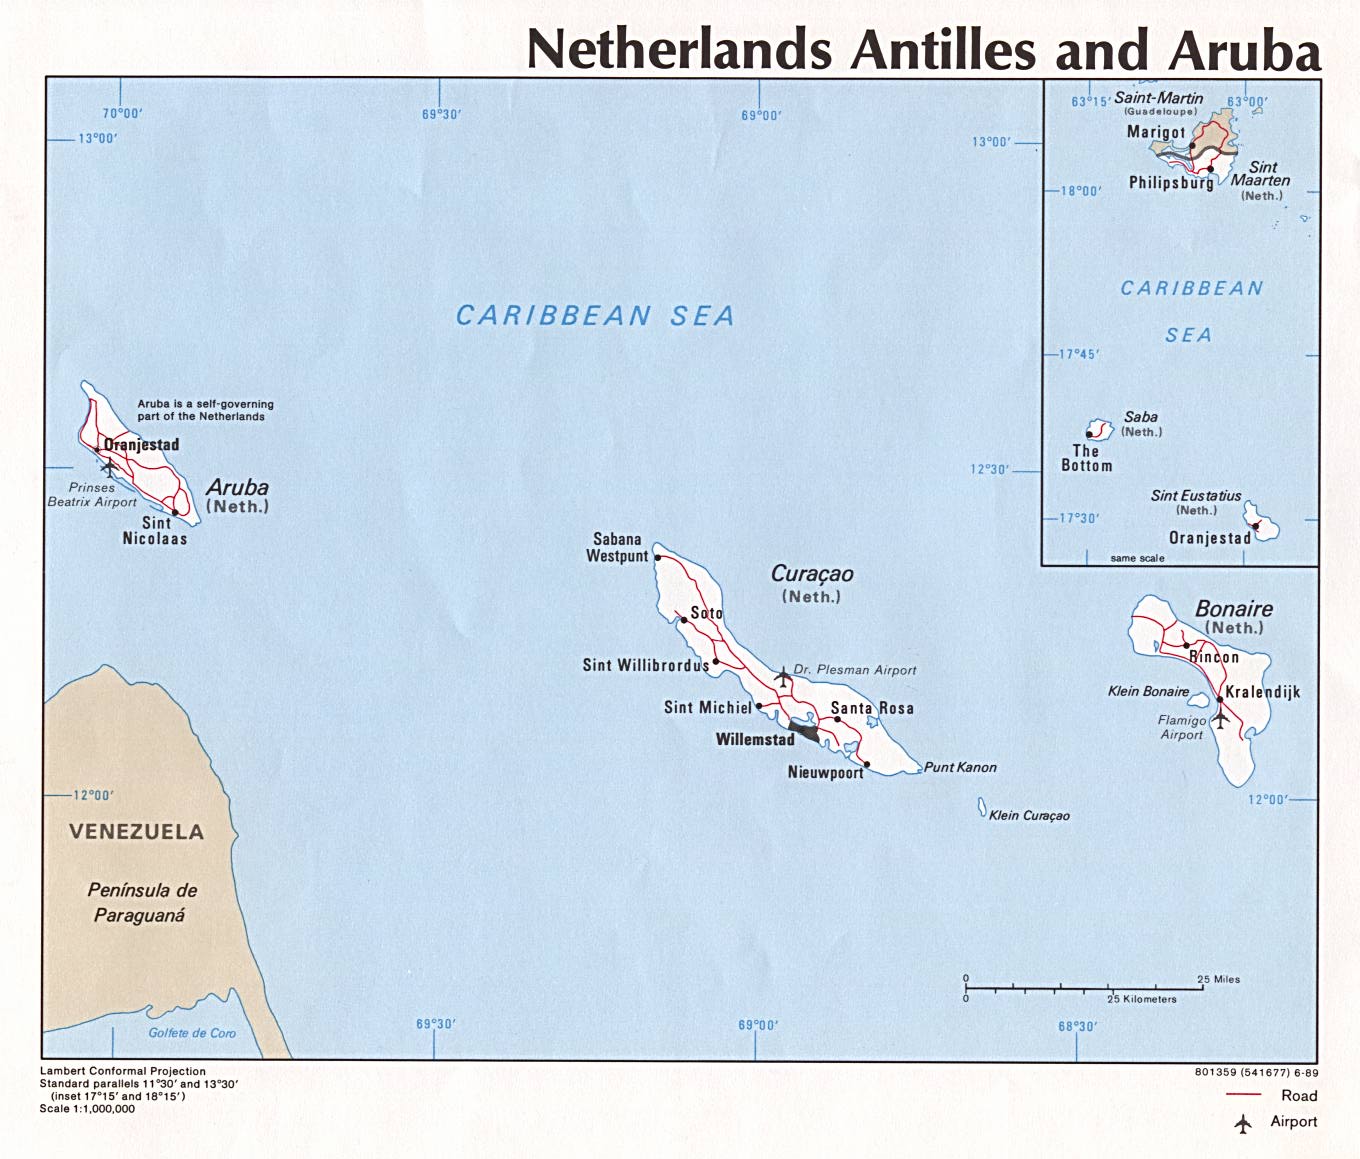 Mapa de las Antillas Holandesas y Aruba.jpg (171566 bytes)